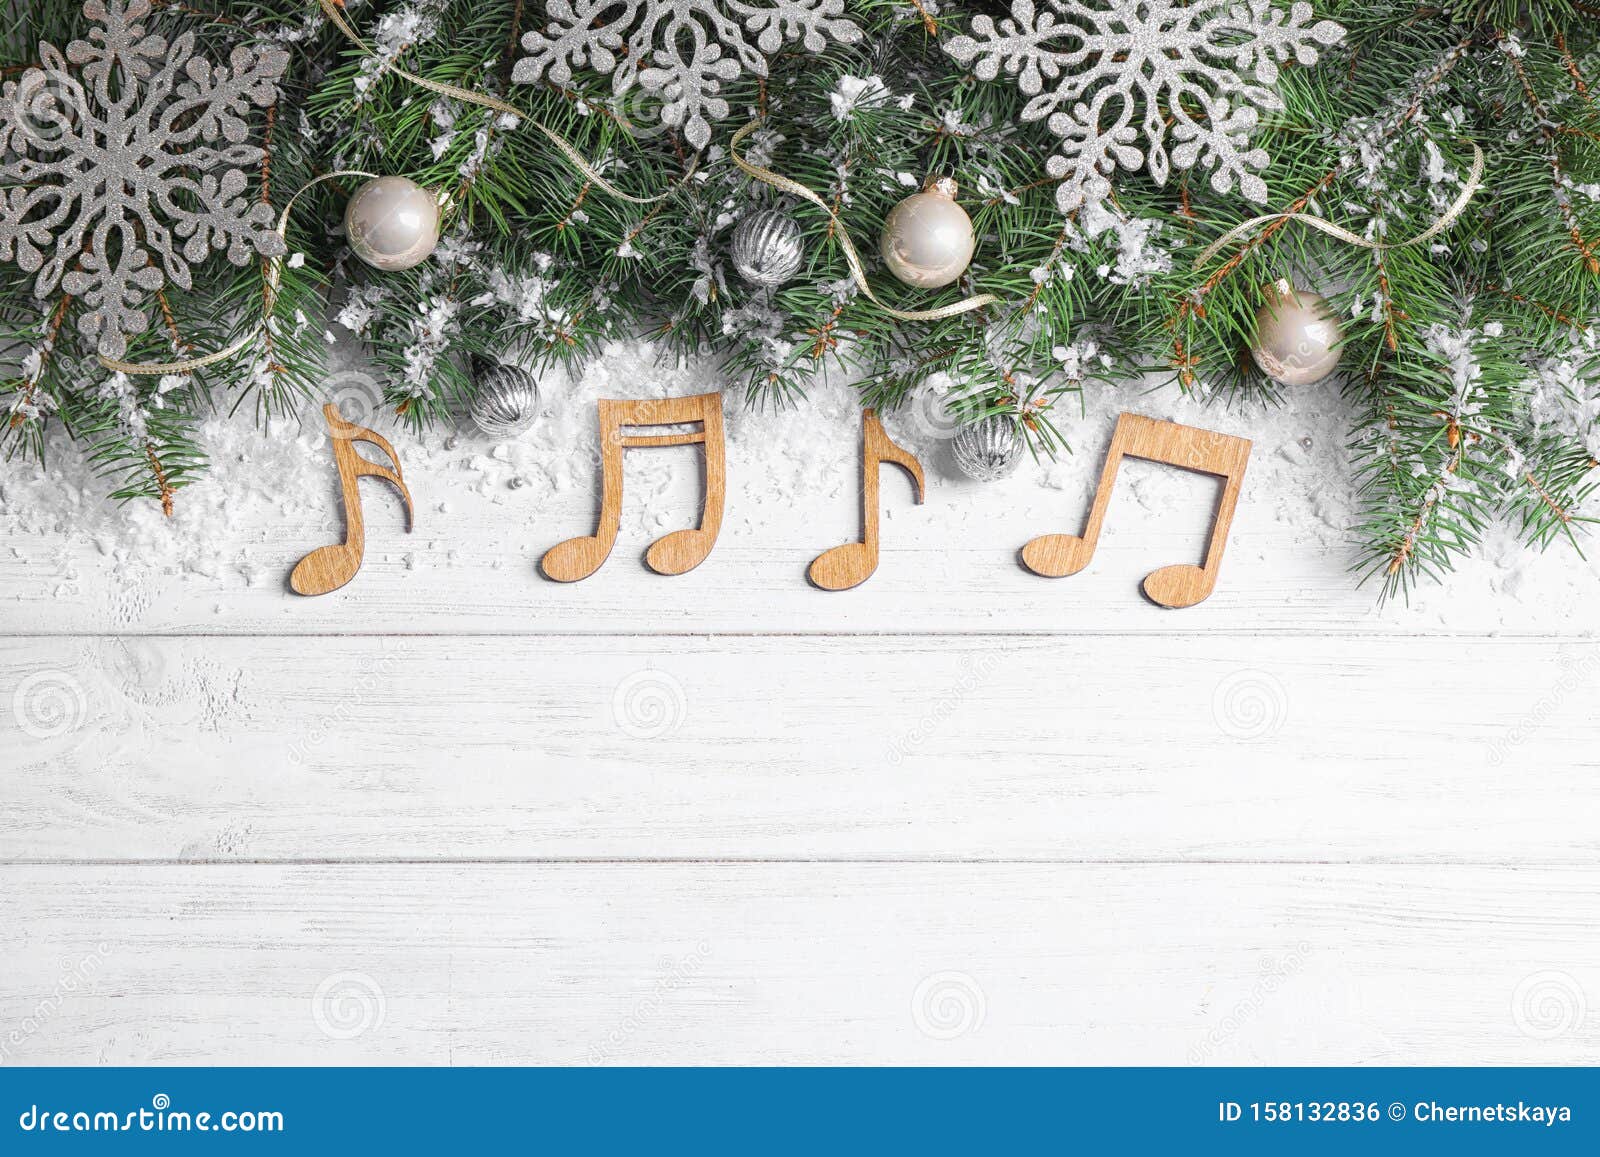 Tận hưởng không khí Giáng sinh đầy ấm áp với hình ảnh phông nền âm nhạc miễn phí! Hình ảnh này sẽ làm cho màn hình của bạn trở nên sinh động hơn với hình ảnh vui nhộn, sáng tạo và phù hợp với mùa lễ hội. Hãy tải ngay về máy của bạn để cảm nhận một mùa Giáng sinh đặc biệt.